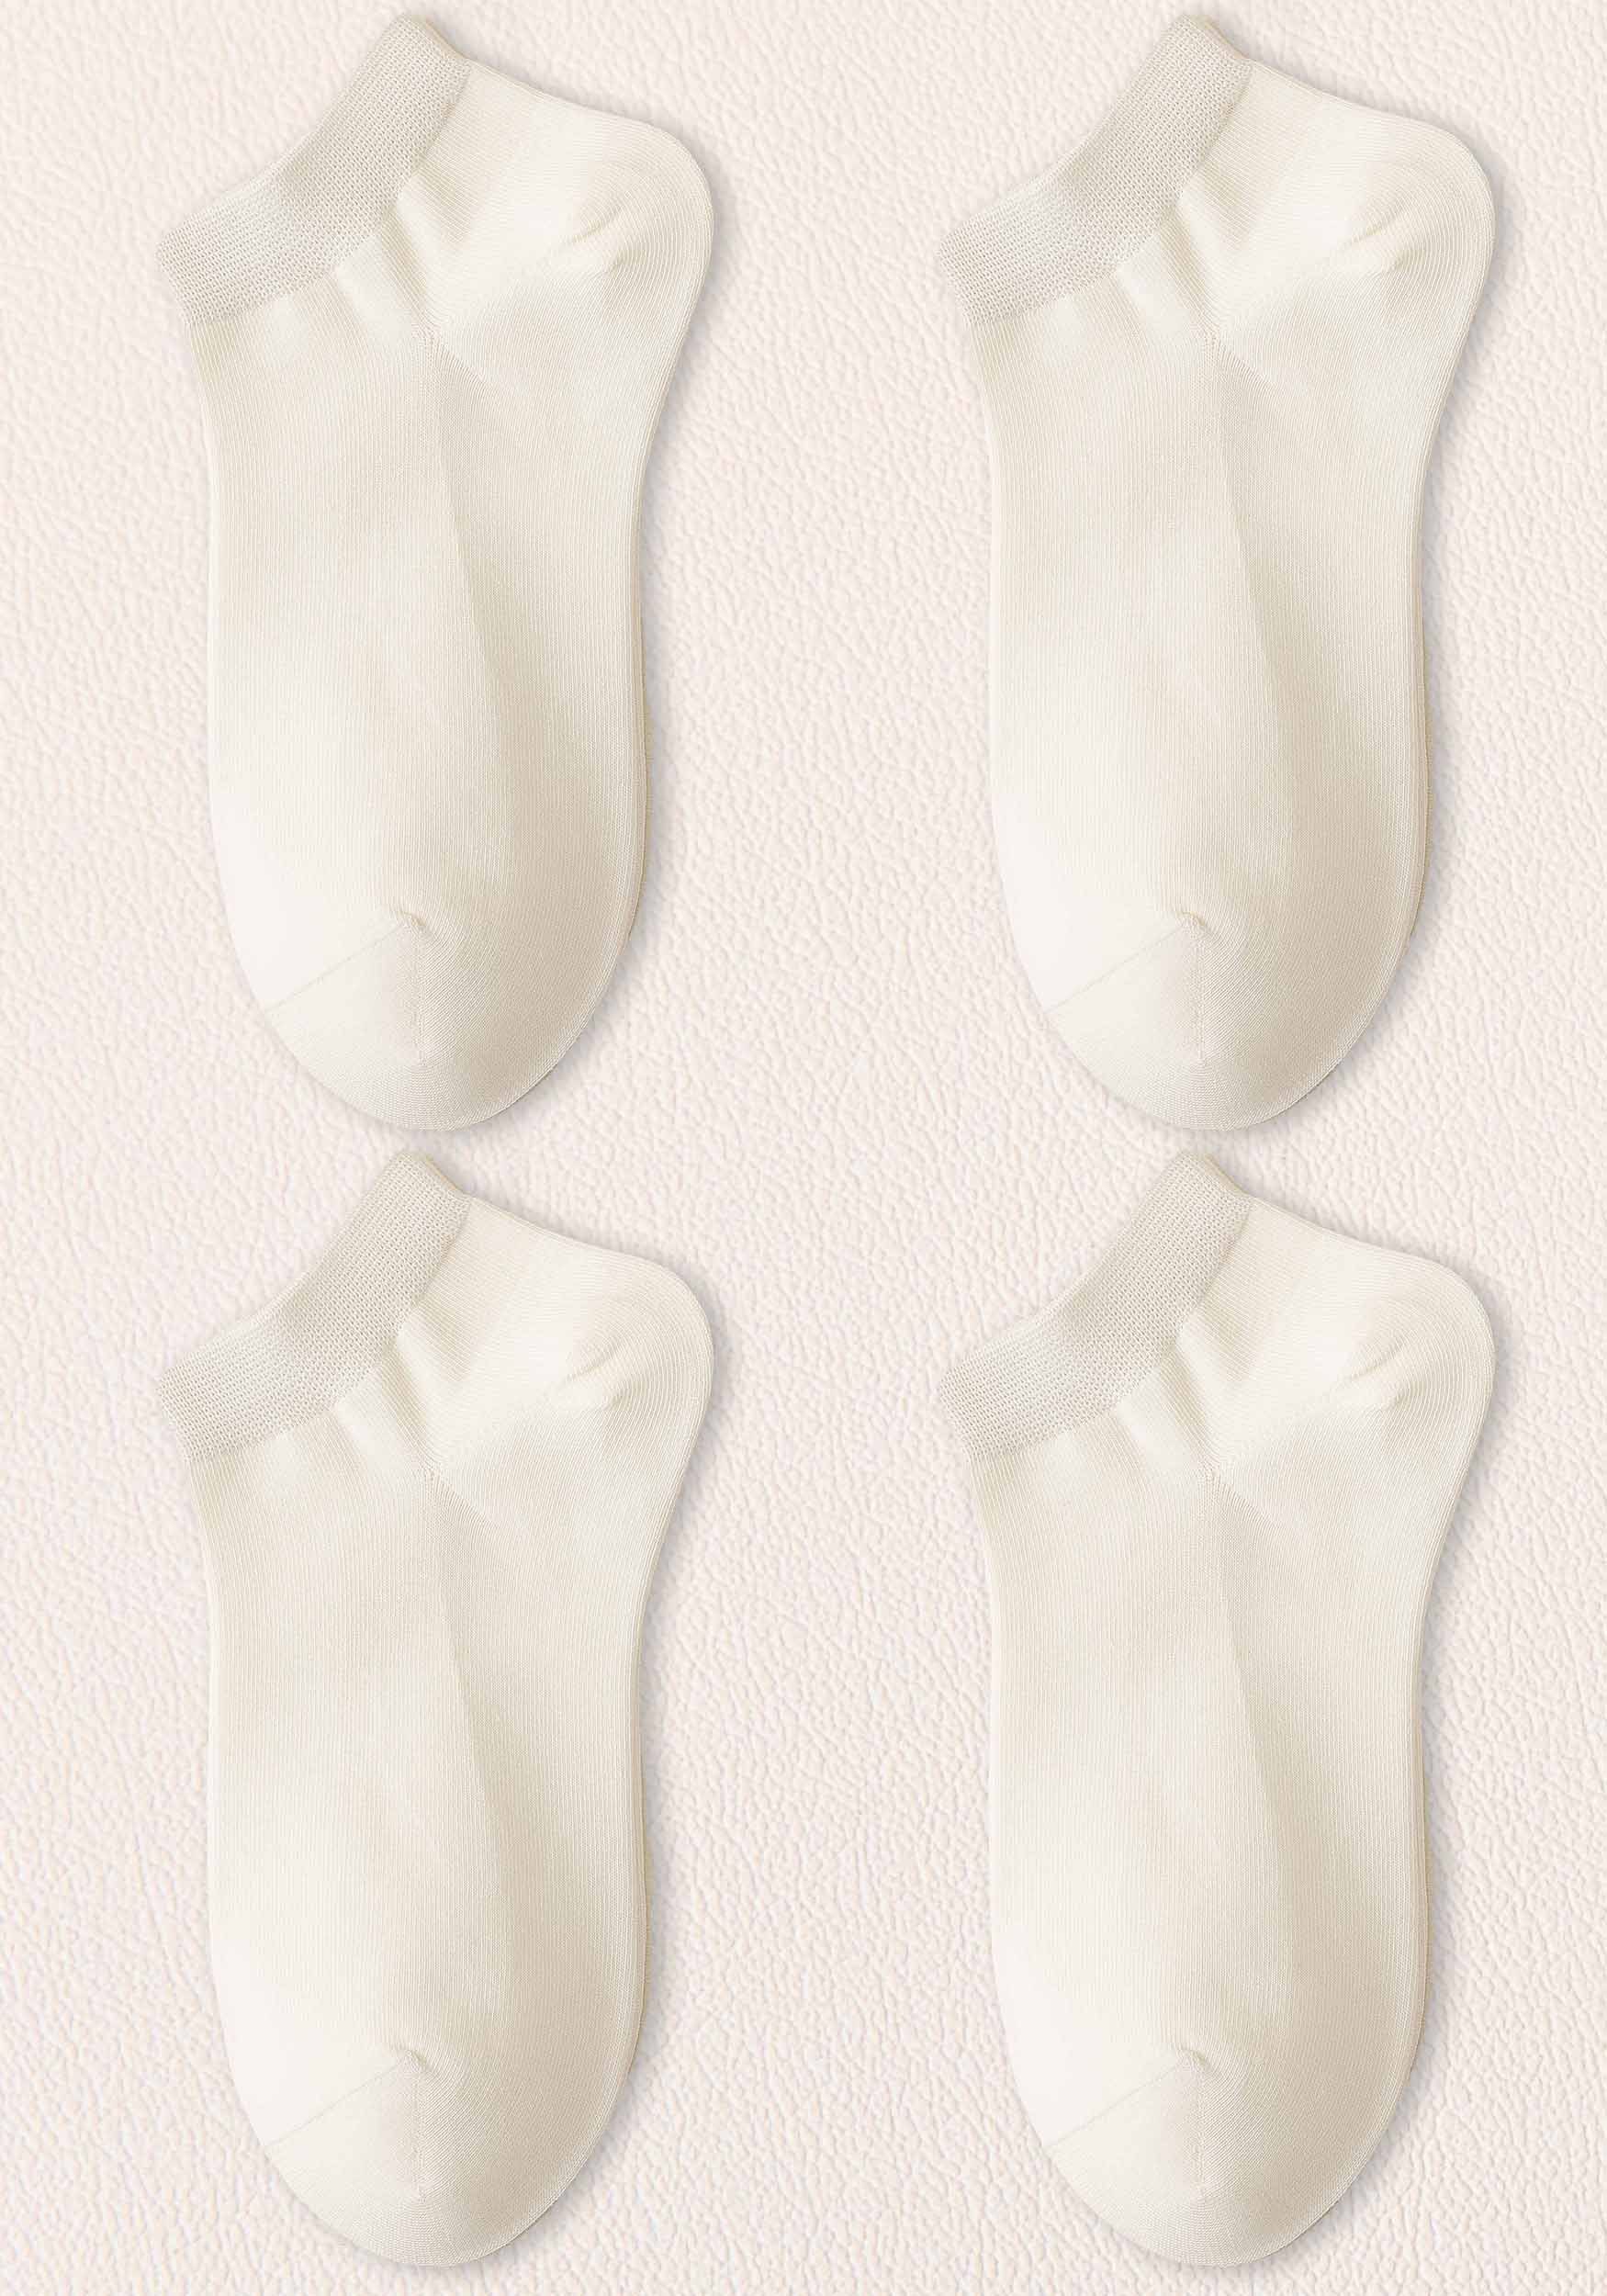 MAGICSHE Freizeitsocken Damen Socken– warm, atmungsaktiv,lange haltbar, kein Verrutschen (4-Paar) Invisible Socken bequem Sneakersocken Weiß